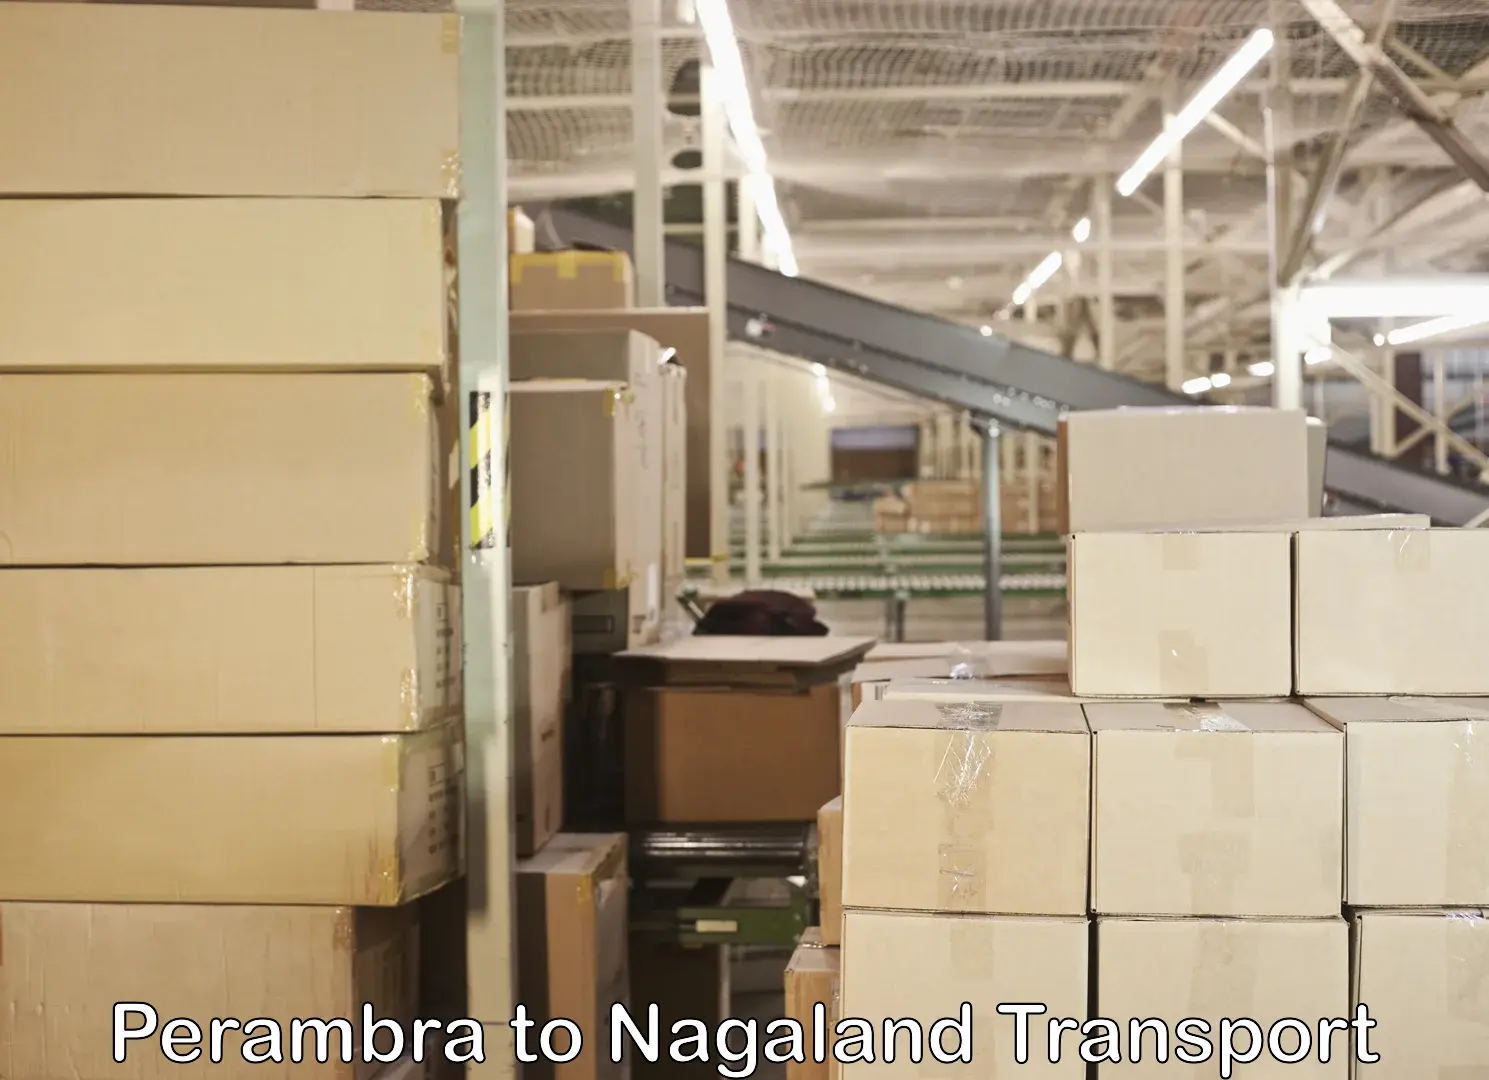 Shipping partner Perambra to NIT Nagaland